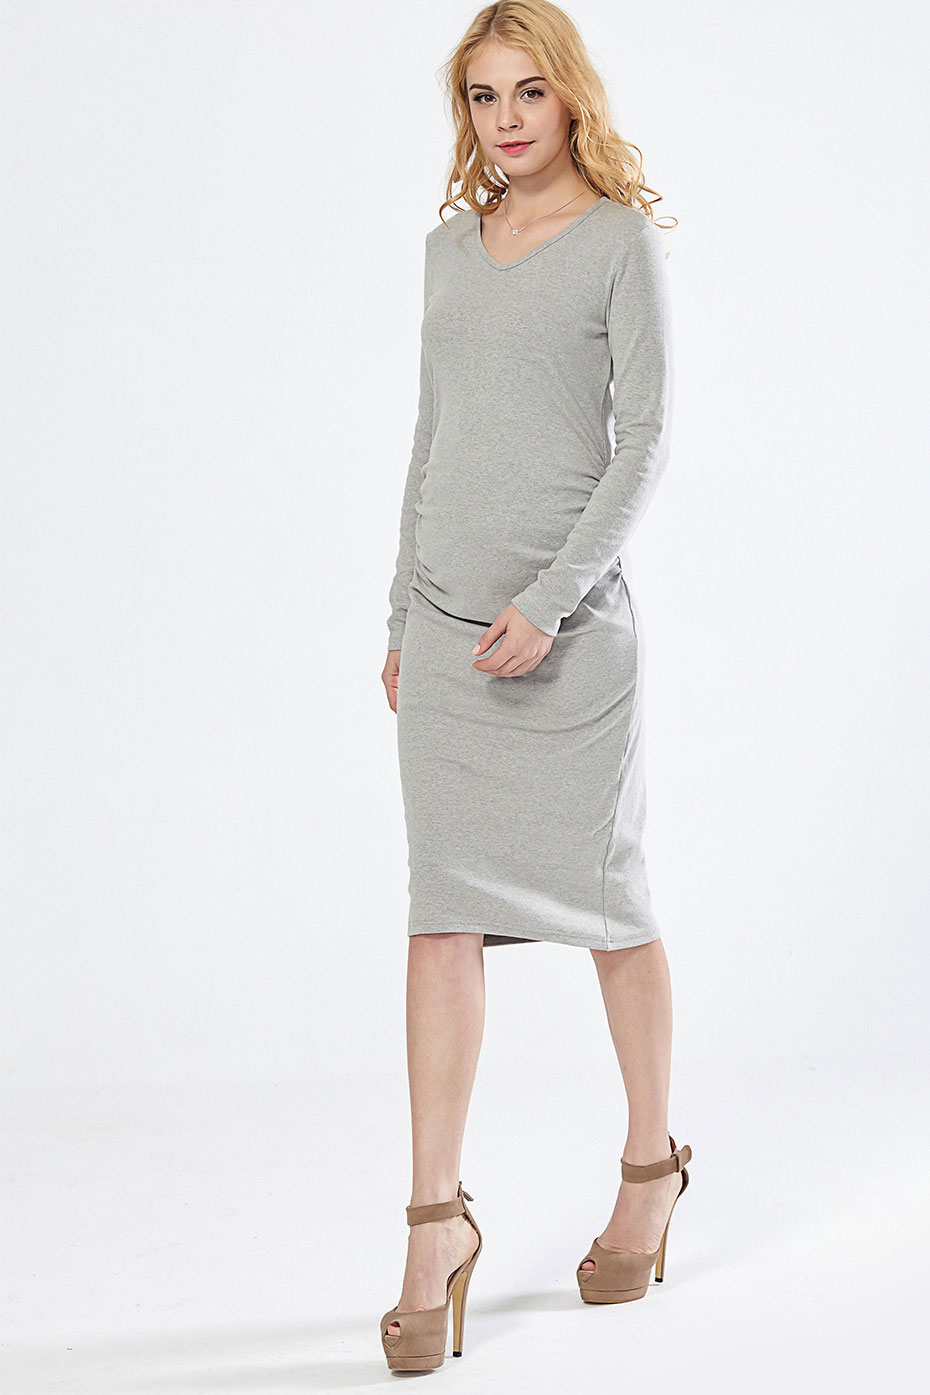 Robe longue gris clair pour femme enceinte et après l'accouchement